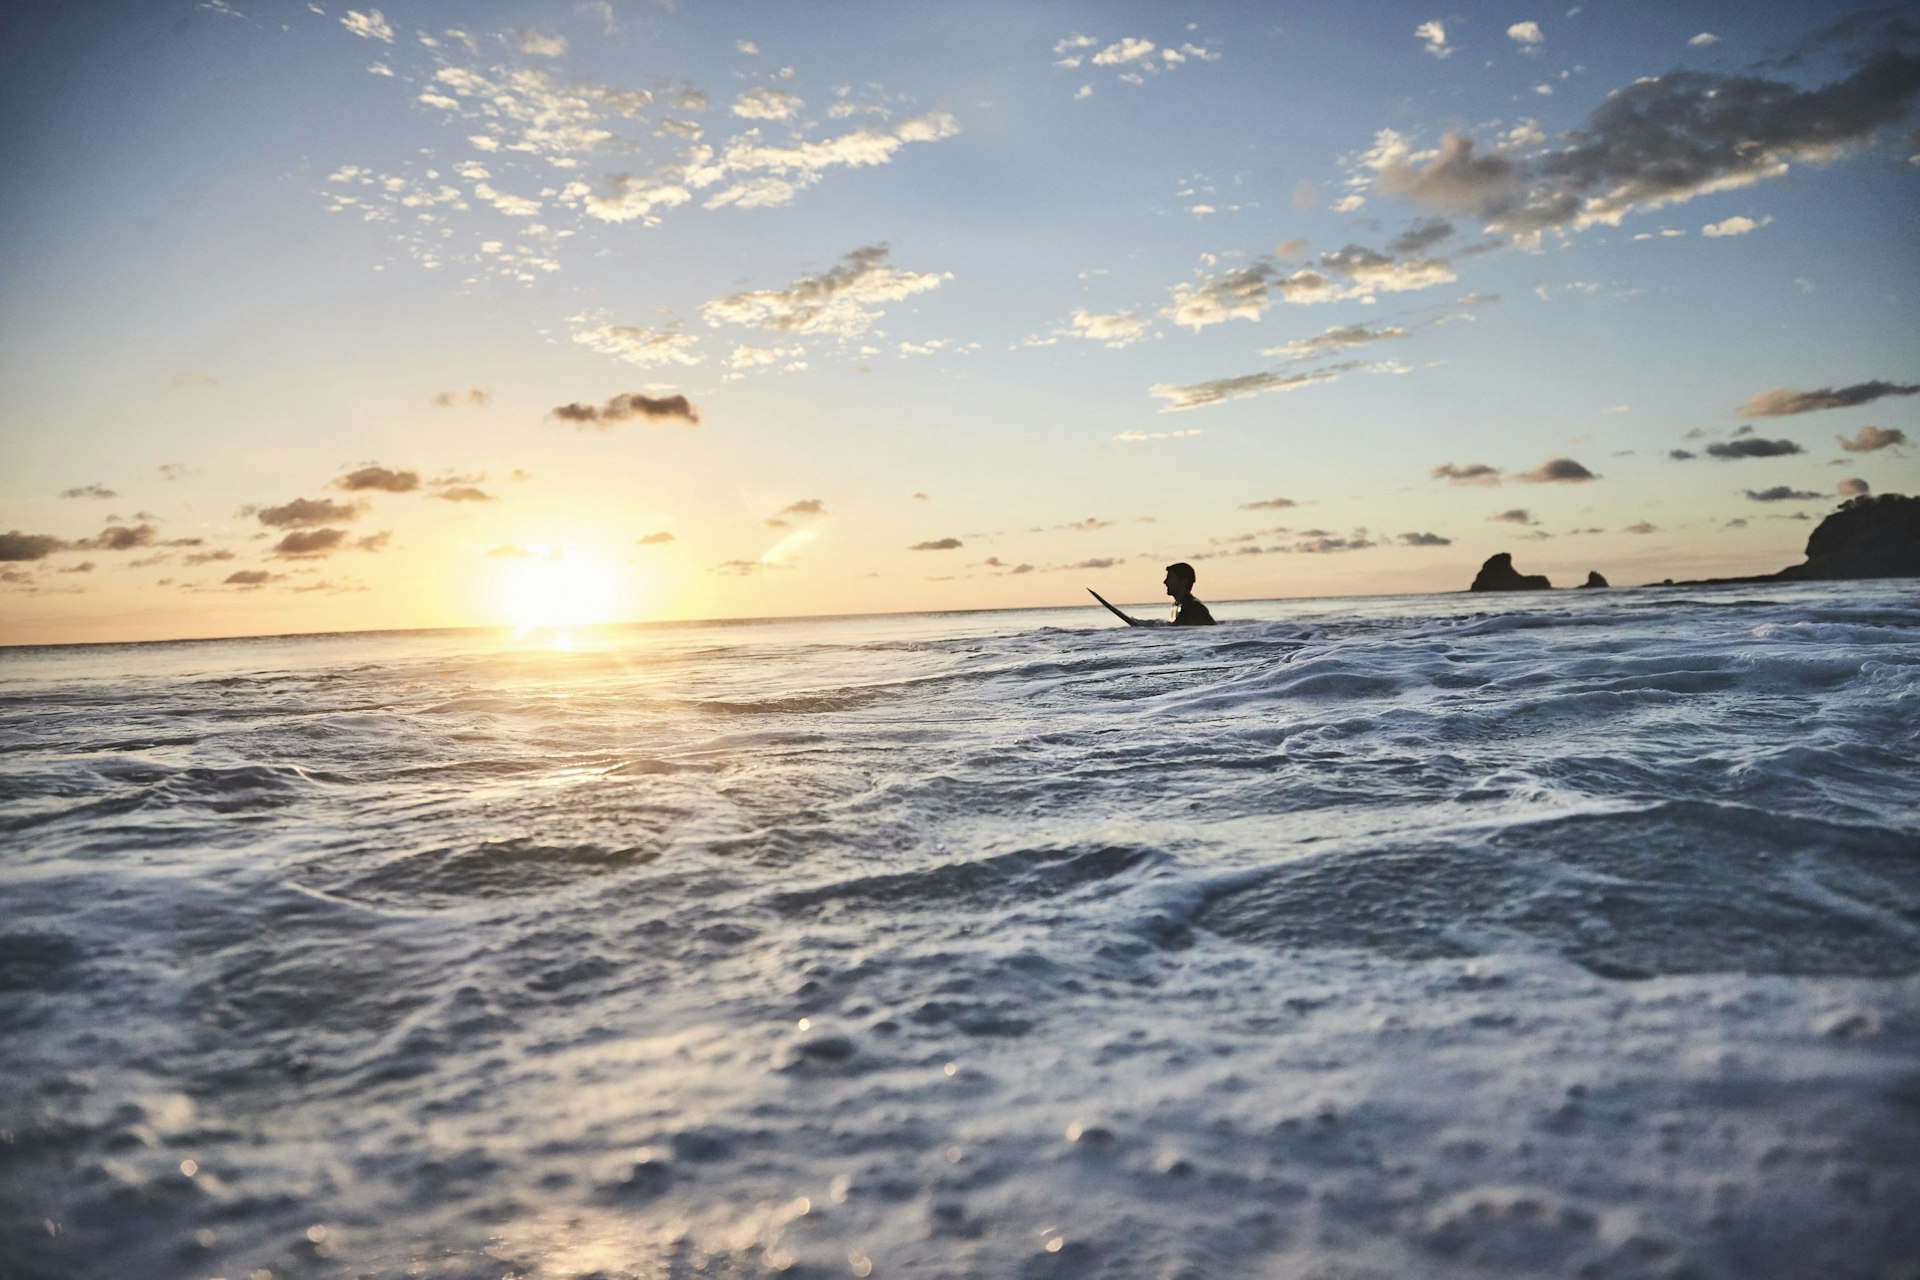 The Travel Diary: Nicaragua's best kept surf secret